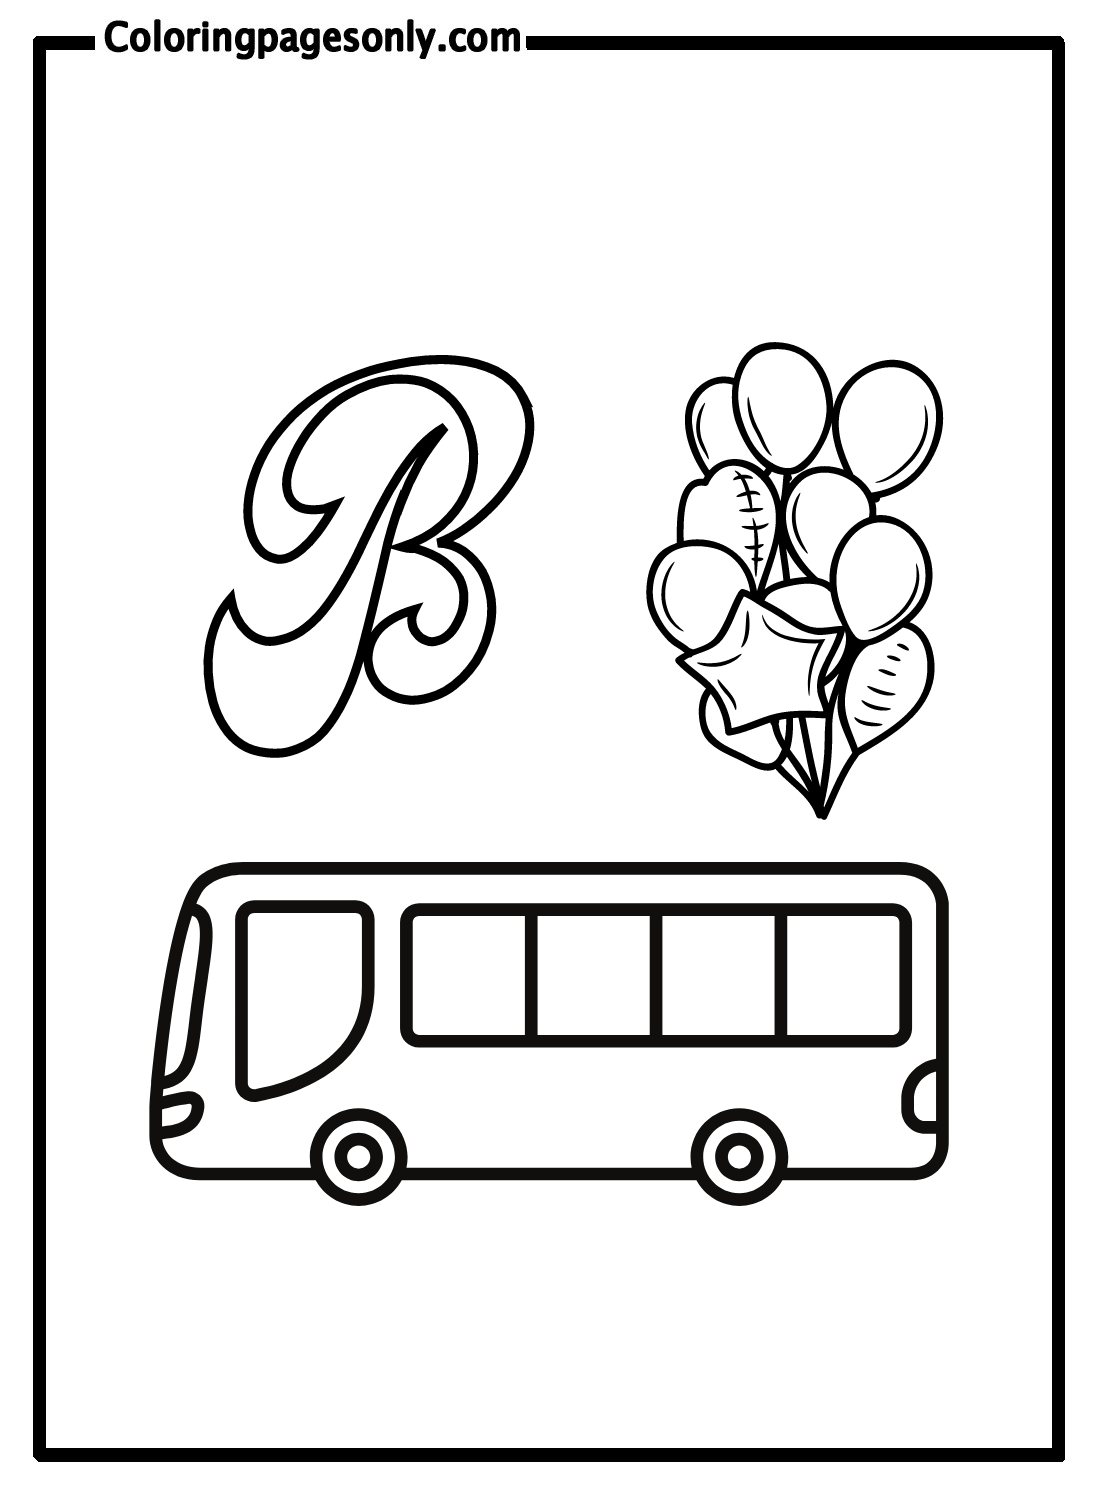 Б с автобусом и воздушными шарами из буквы Б